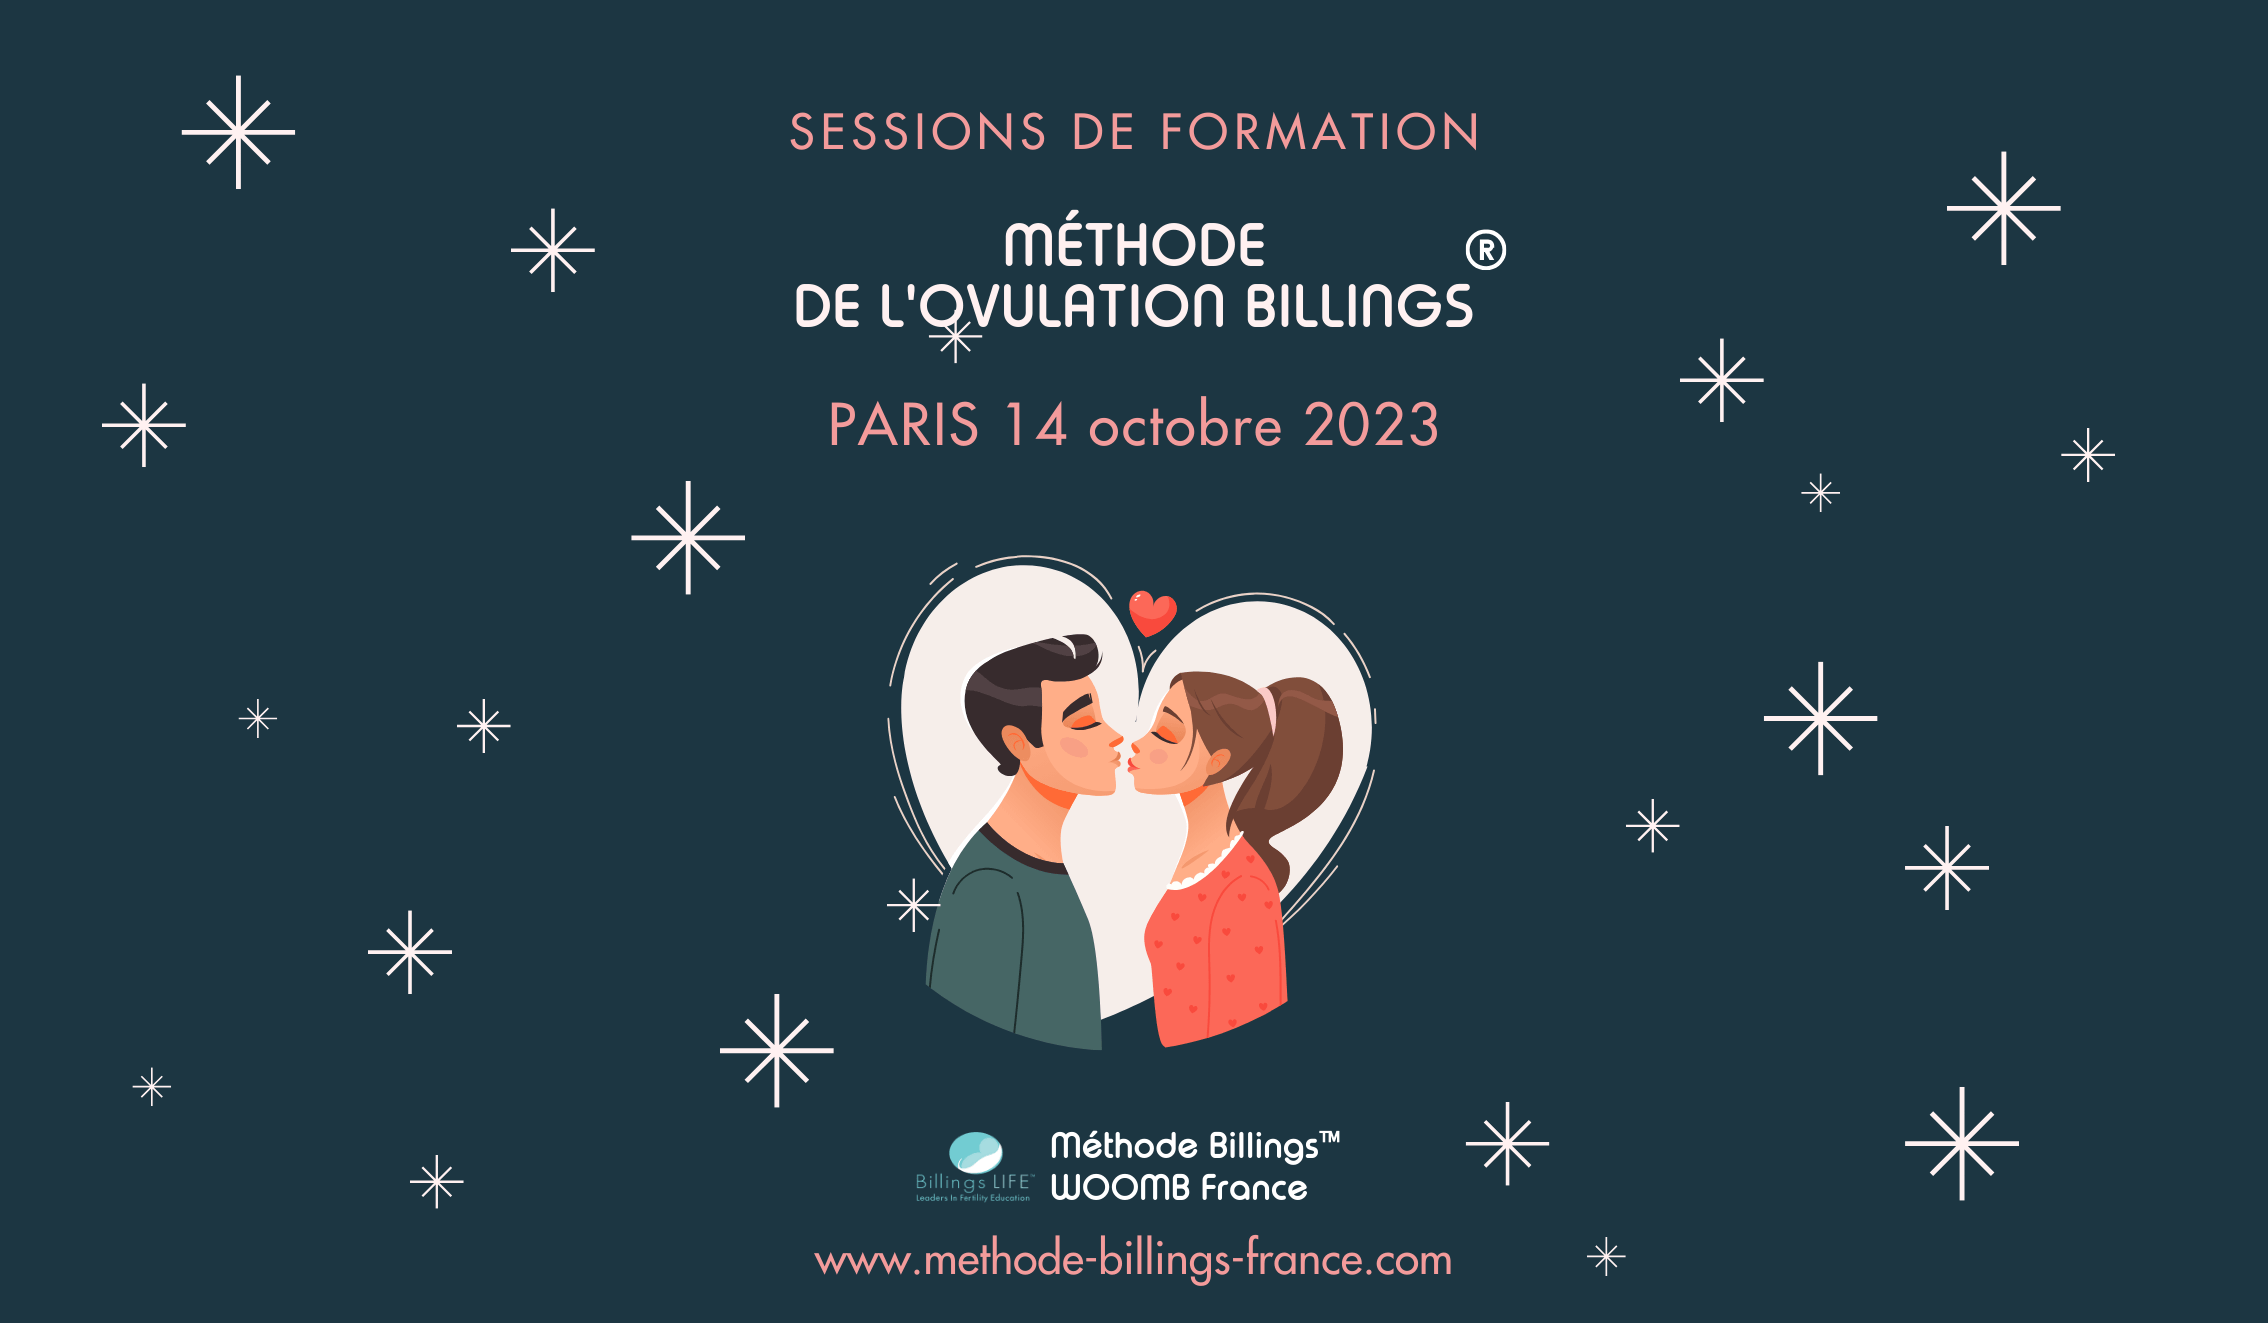 Session de formation Billings 14 octobre 2023 à PARIS (75014)